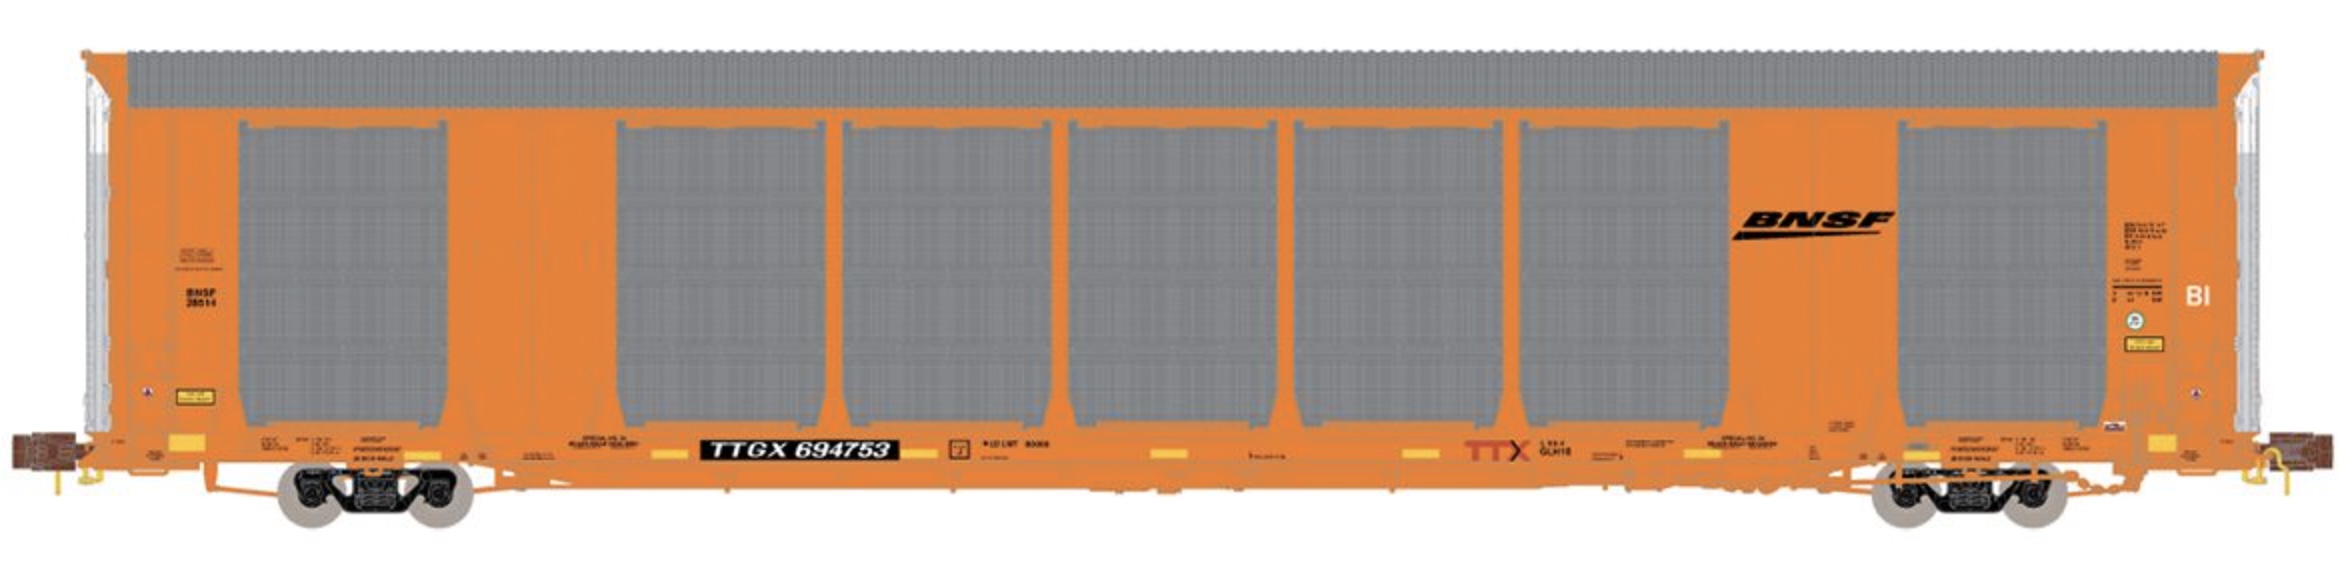 N Scale - ScaleTrains - SXT33726 - Autorack, Enclosed, Tri-Level - Burlington Northern Santa Fe - 694753